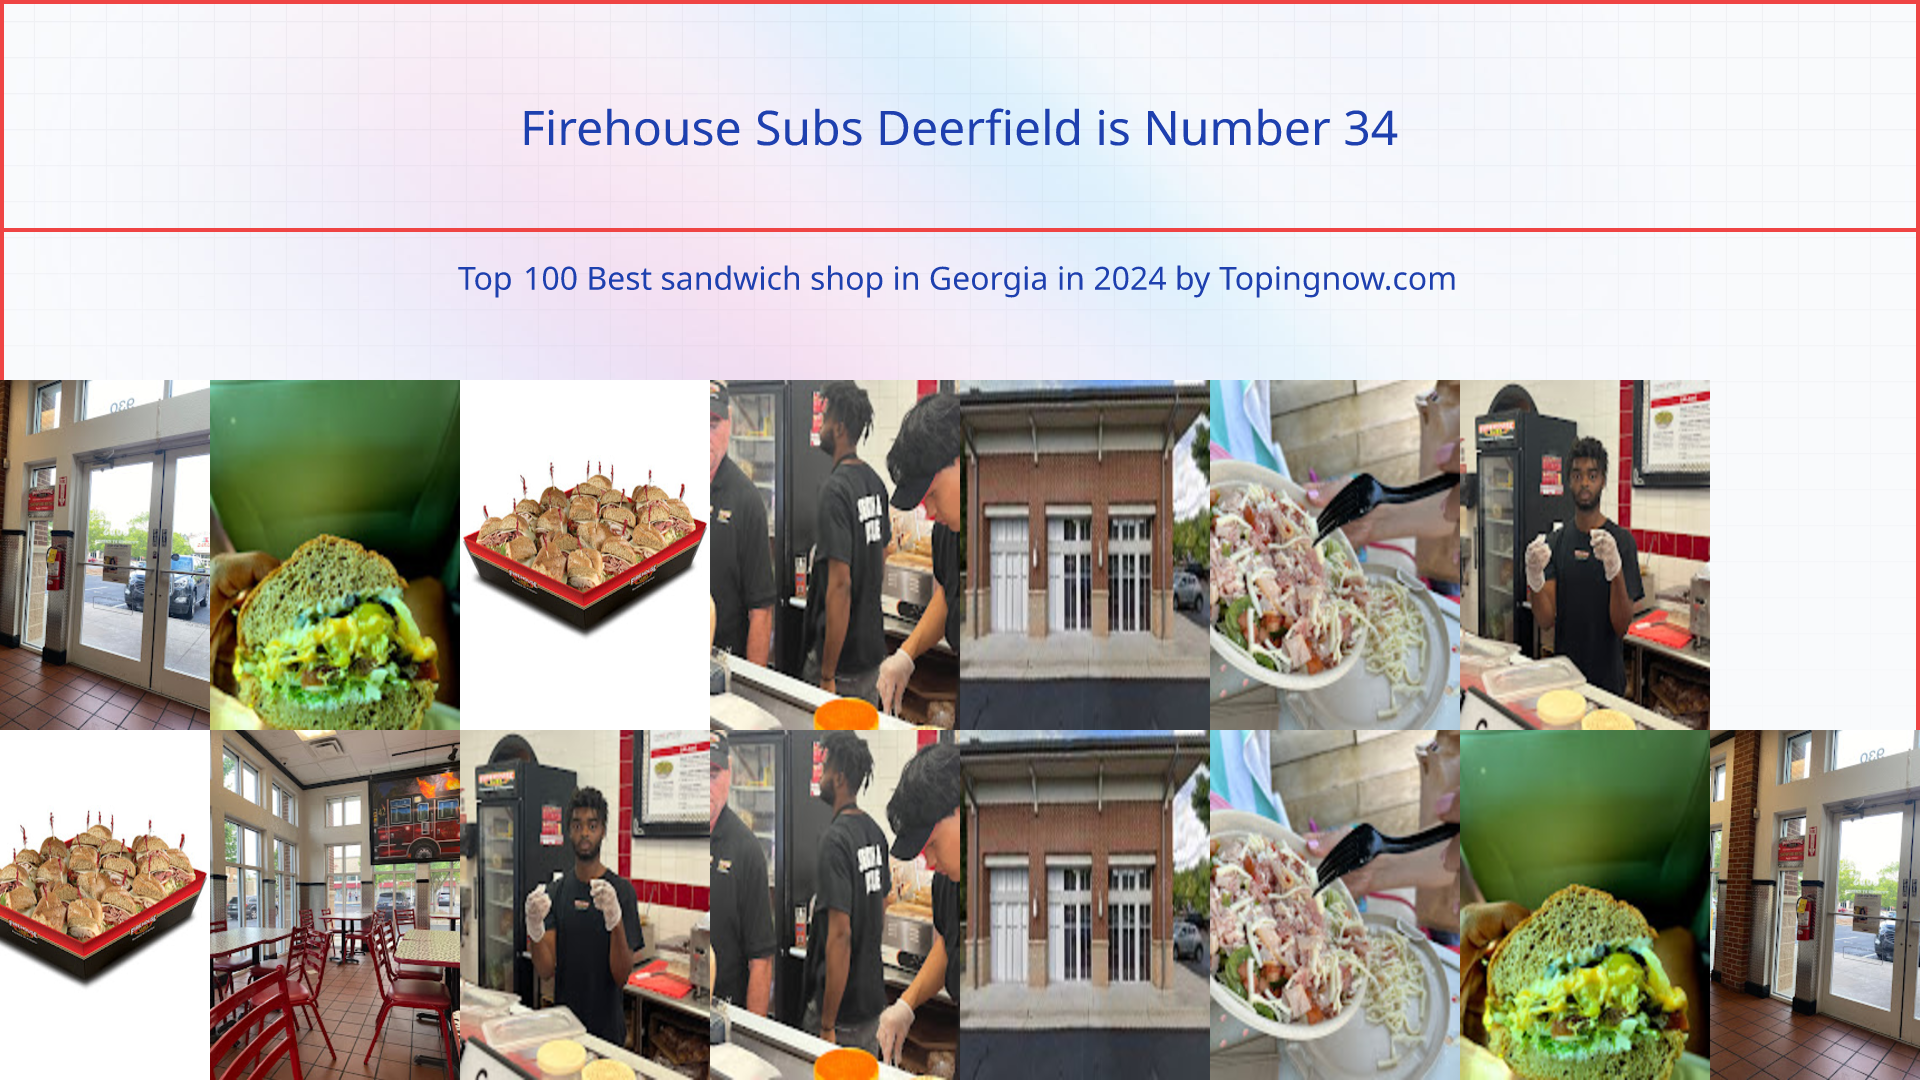 Firehouse Subs Deerfield: Top 100 Best sandwich shop in Georgia in 2024